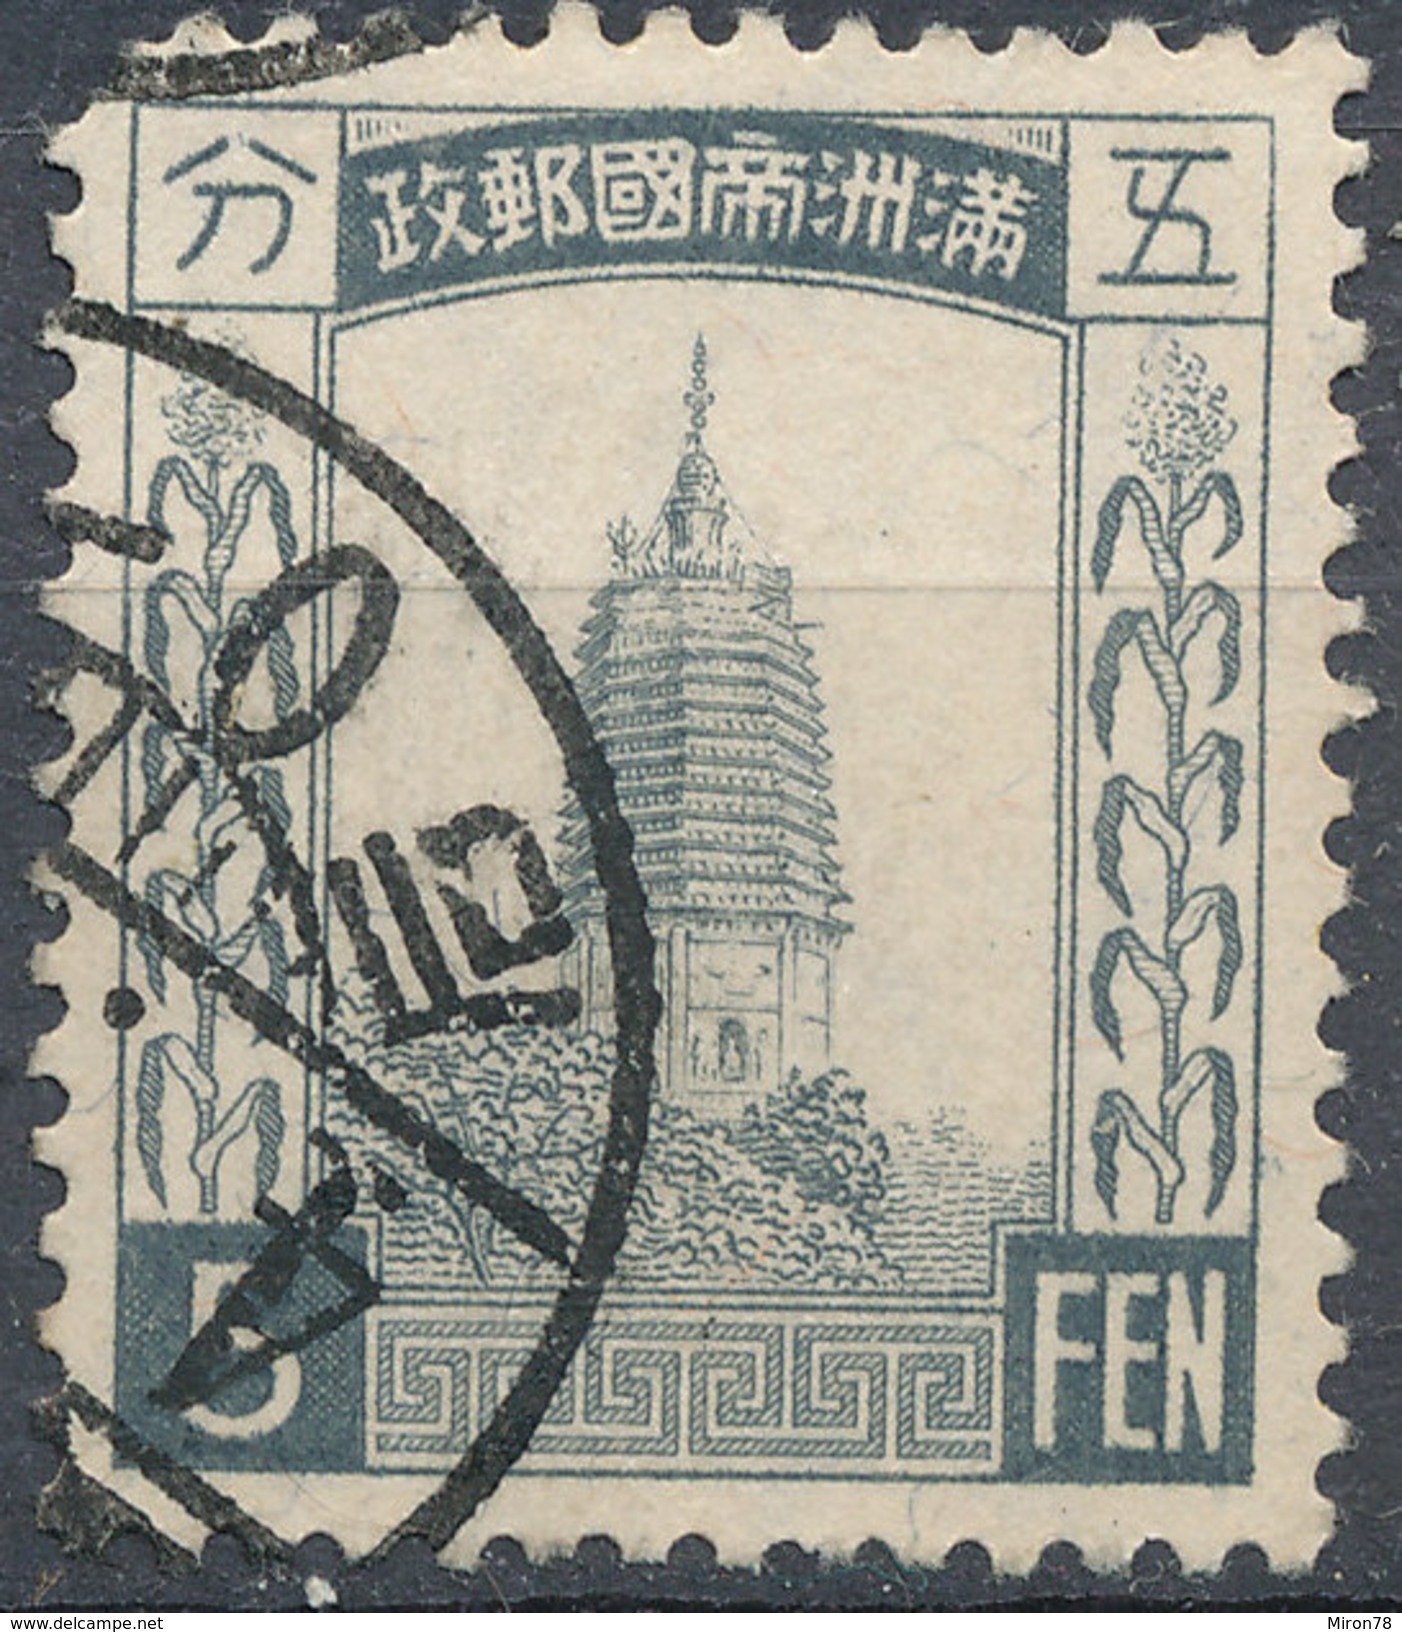 Stamp Manchuria 1932-34? Used - 1932-45 Manchuria (Manchukuo)